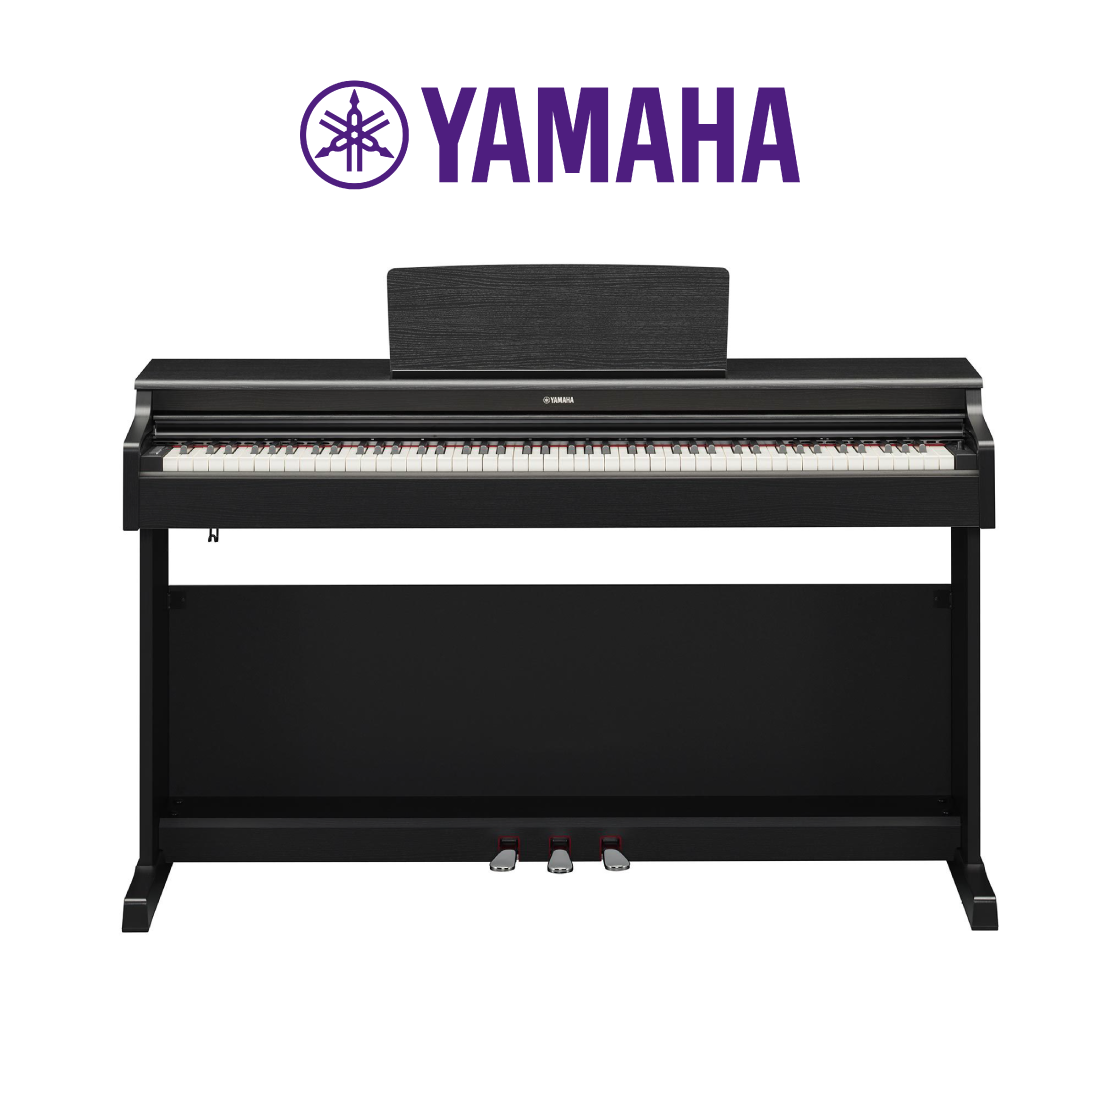 Đàn Piano điện, Digital Piano - Yamaha ARIUS YDP-165 (YDP165) - Black, 88 phím GH3 nặng, mặt trên phím làm bằng gỗ mun - Hàng chính hãng